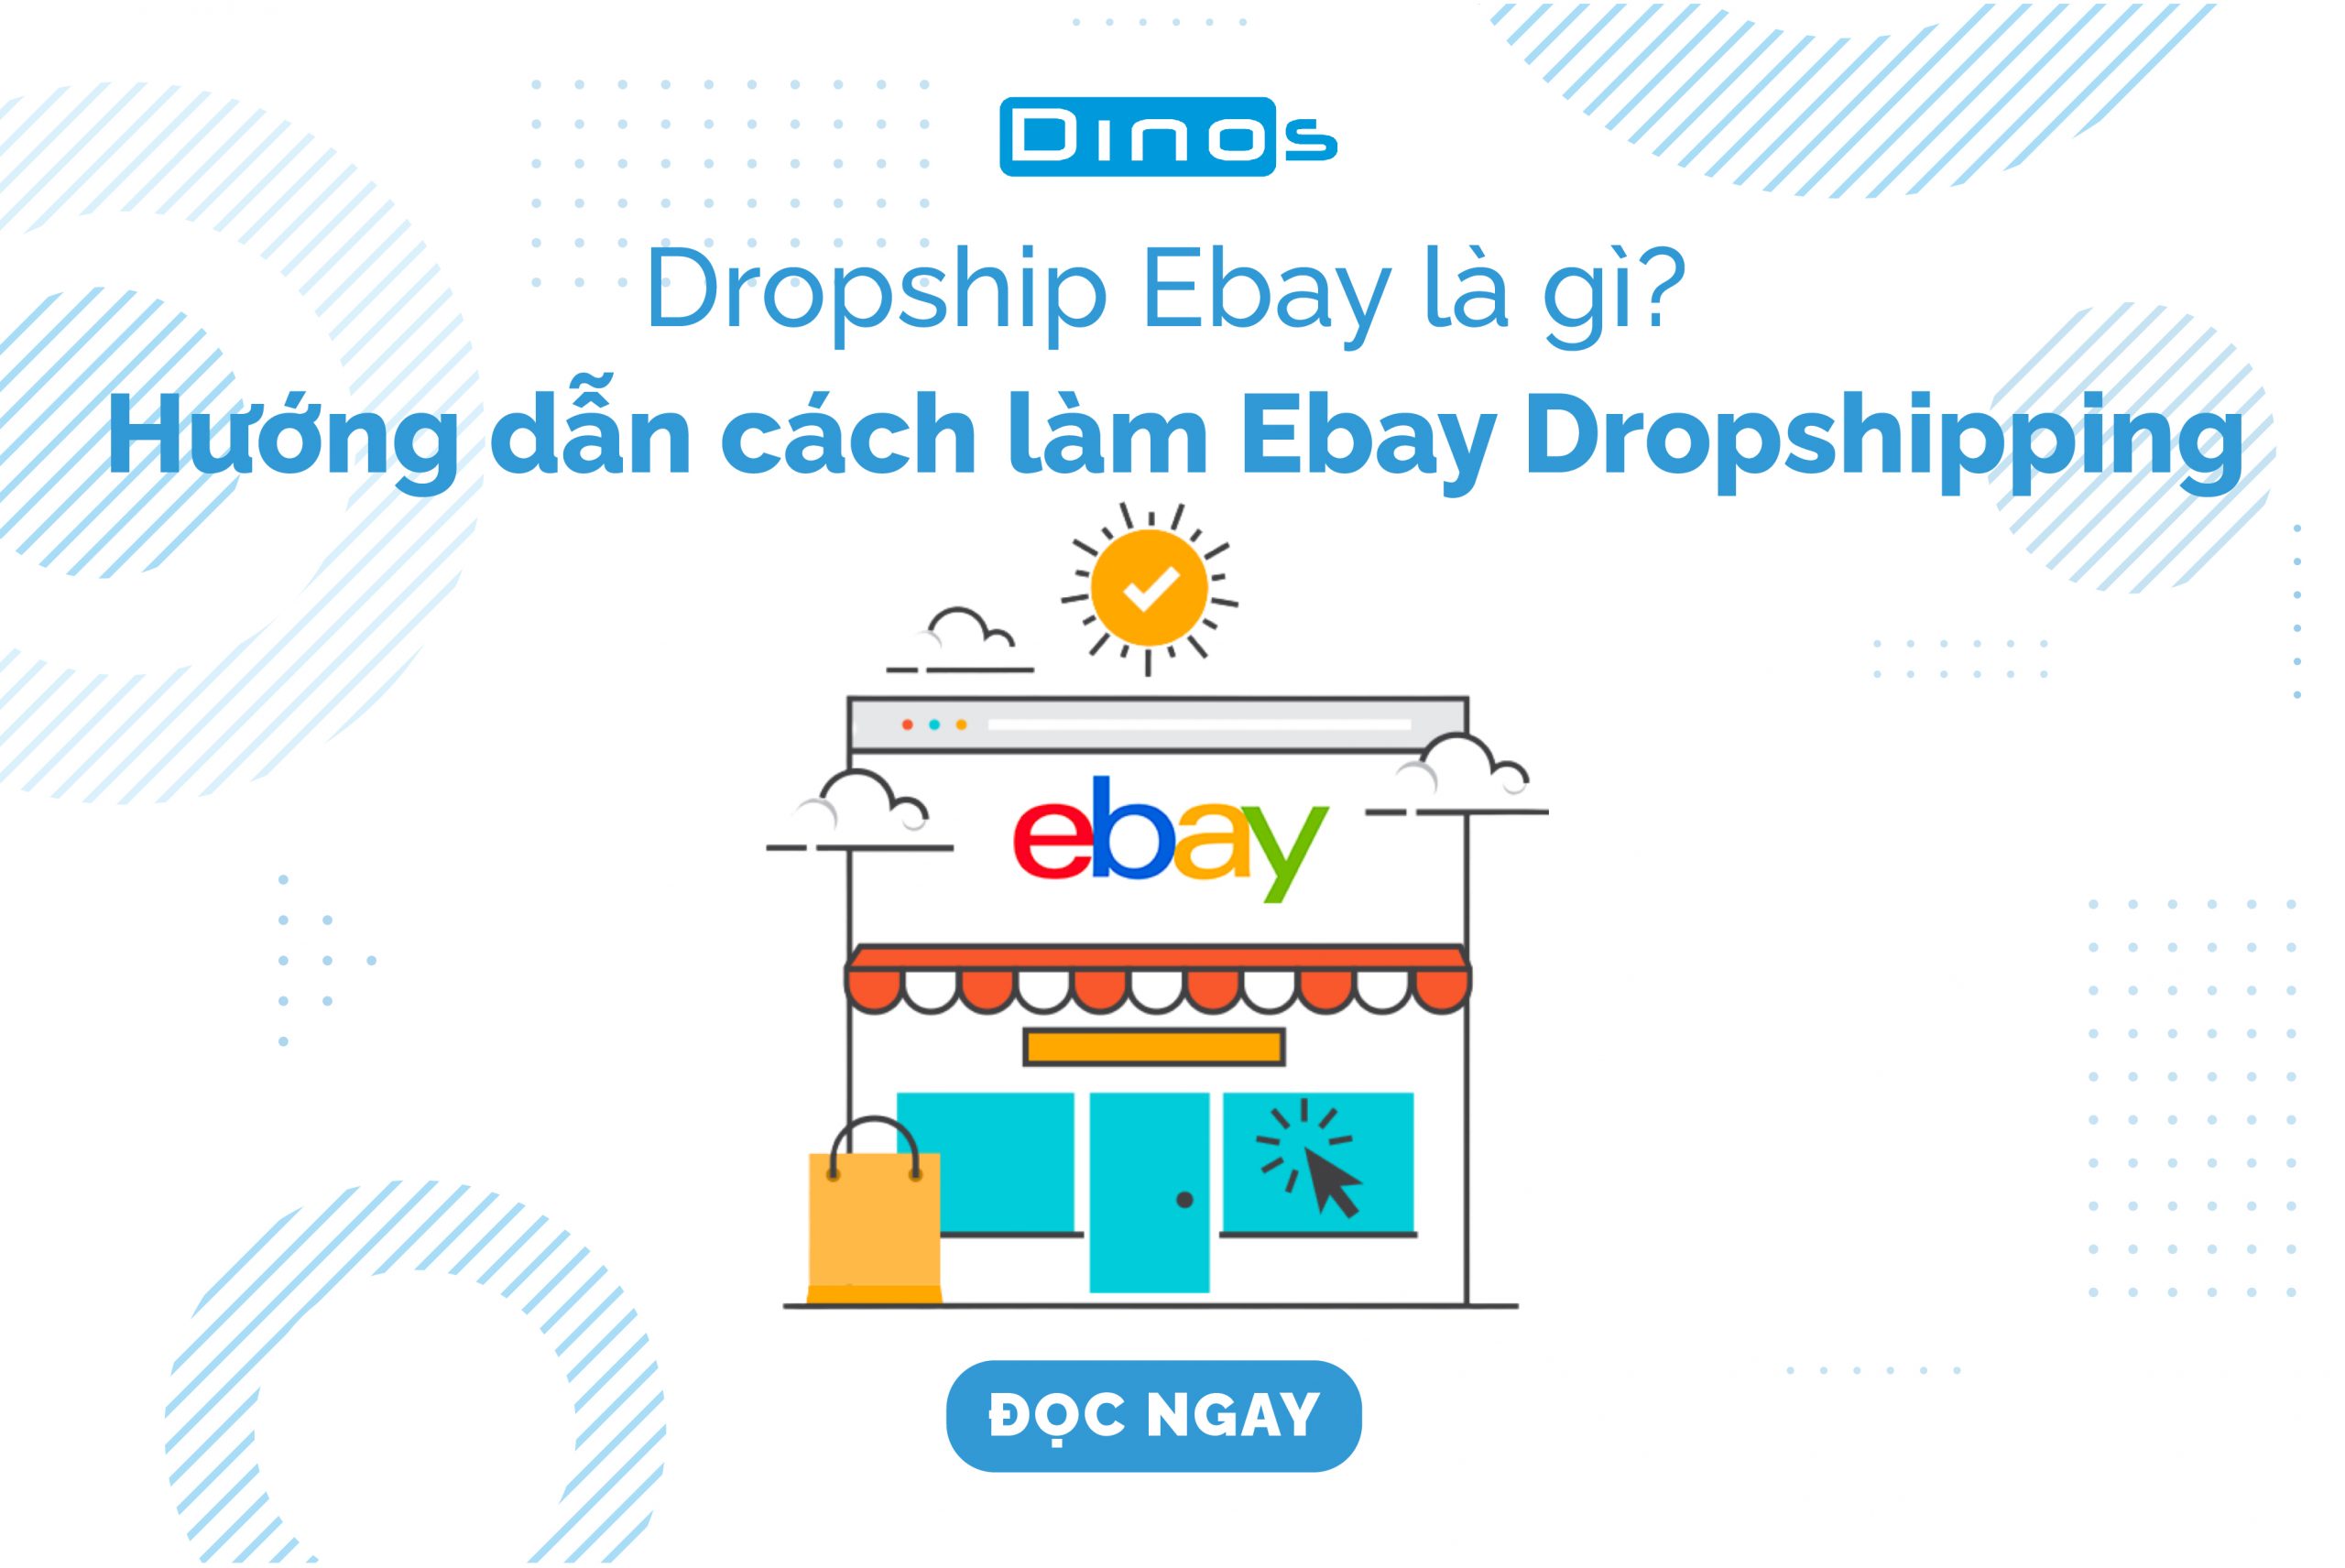 Dropship Ebay là gì? Hướng dẫn cách làm Ebay Dropshipping